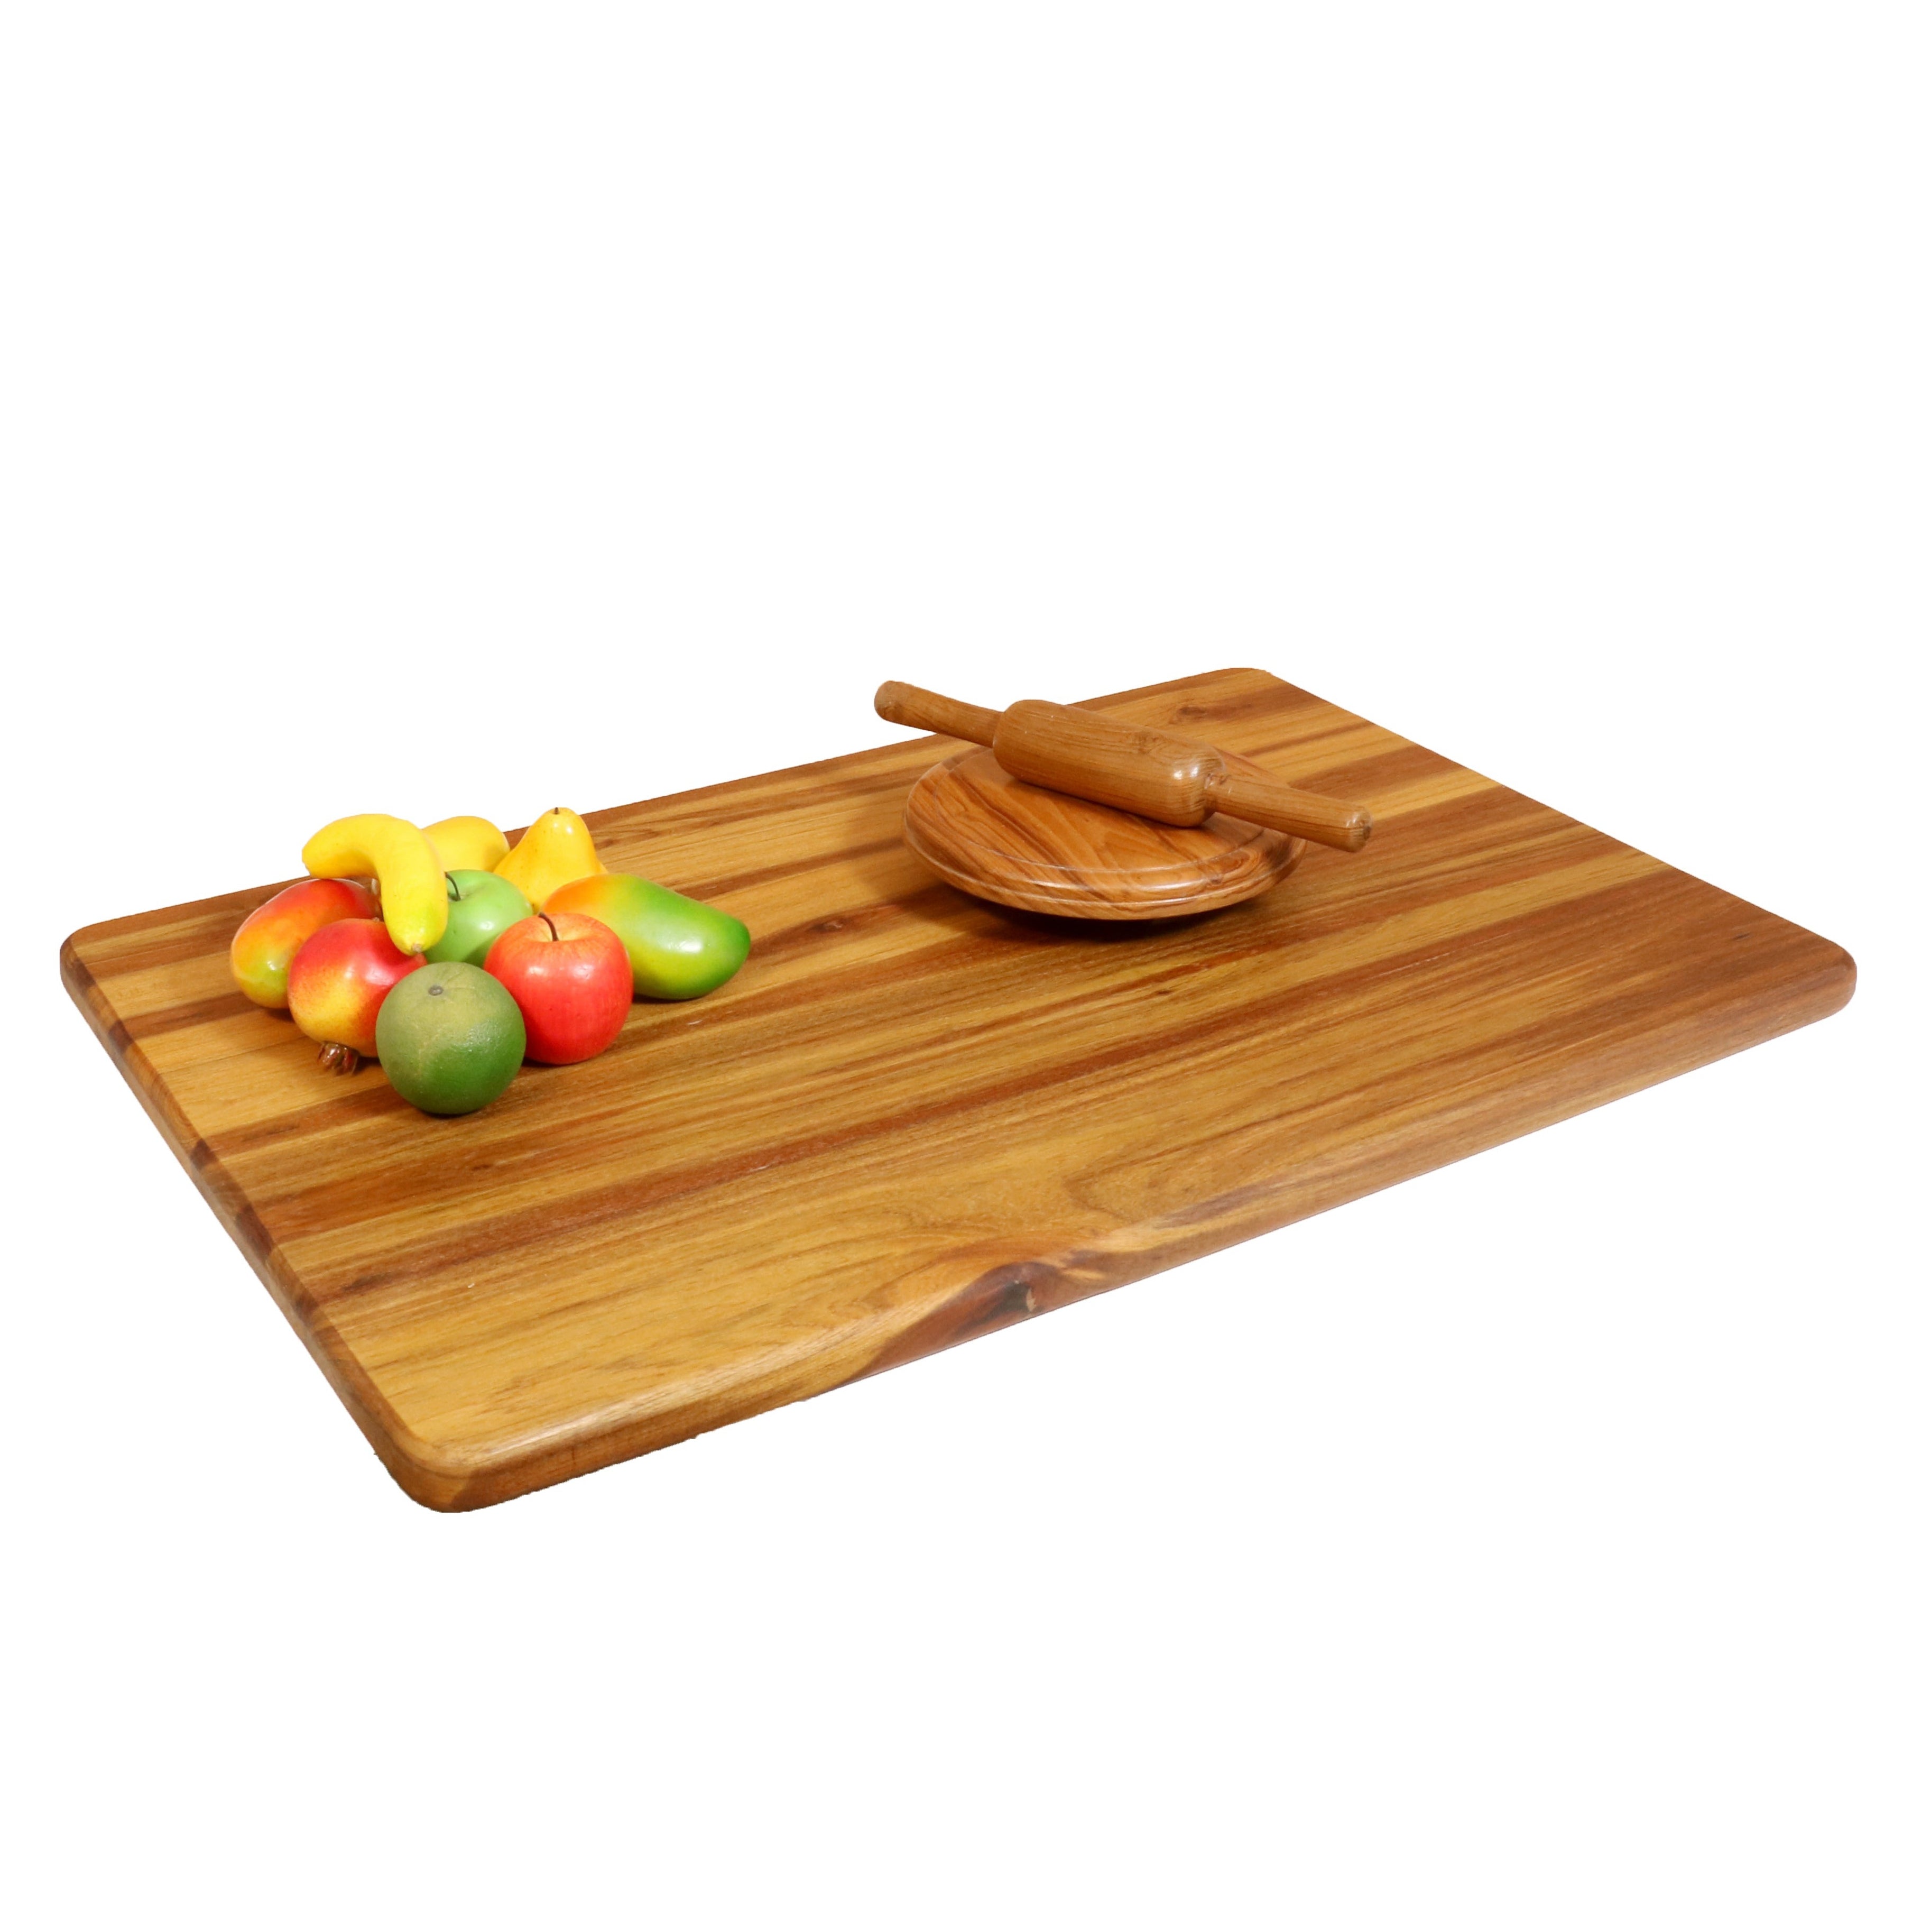 Elegant Teak Wood Chopping Board Cutting Board